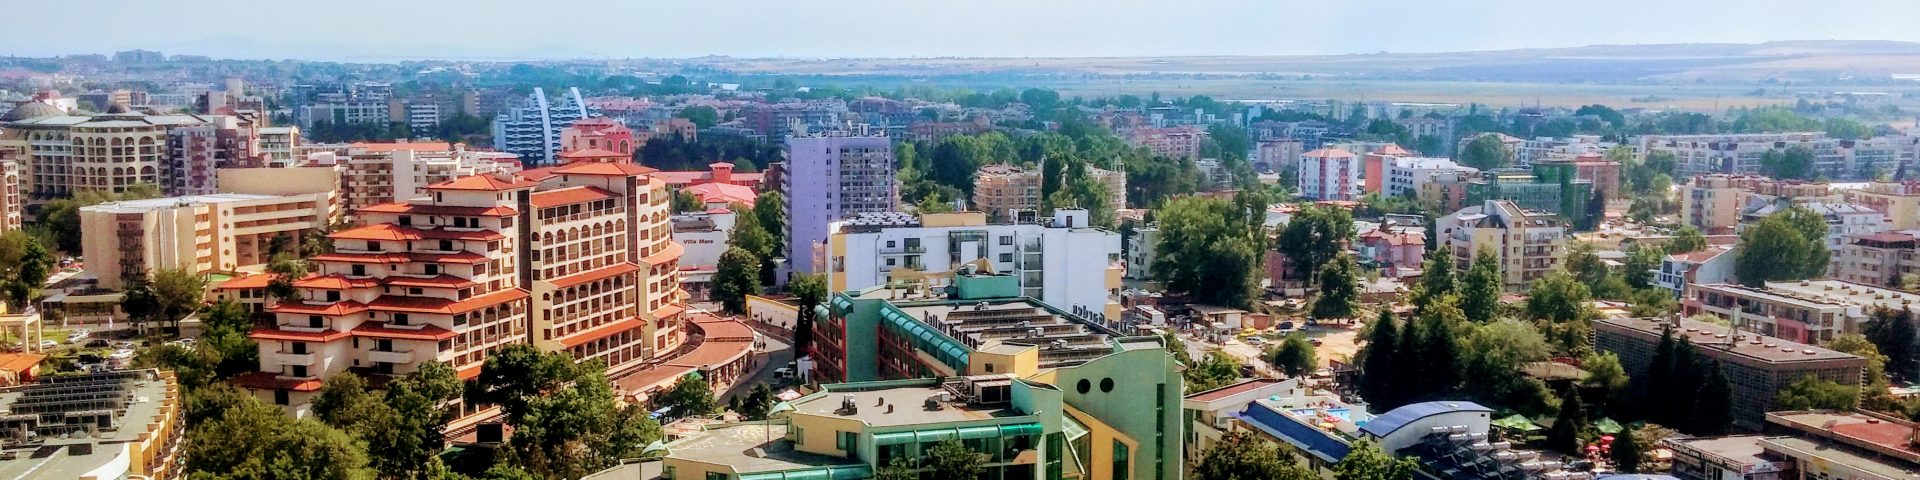 Послепродажная регистрация недвижимости в Болгарии